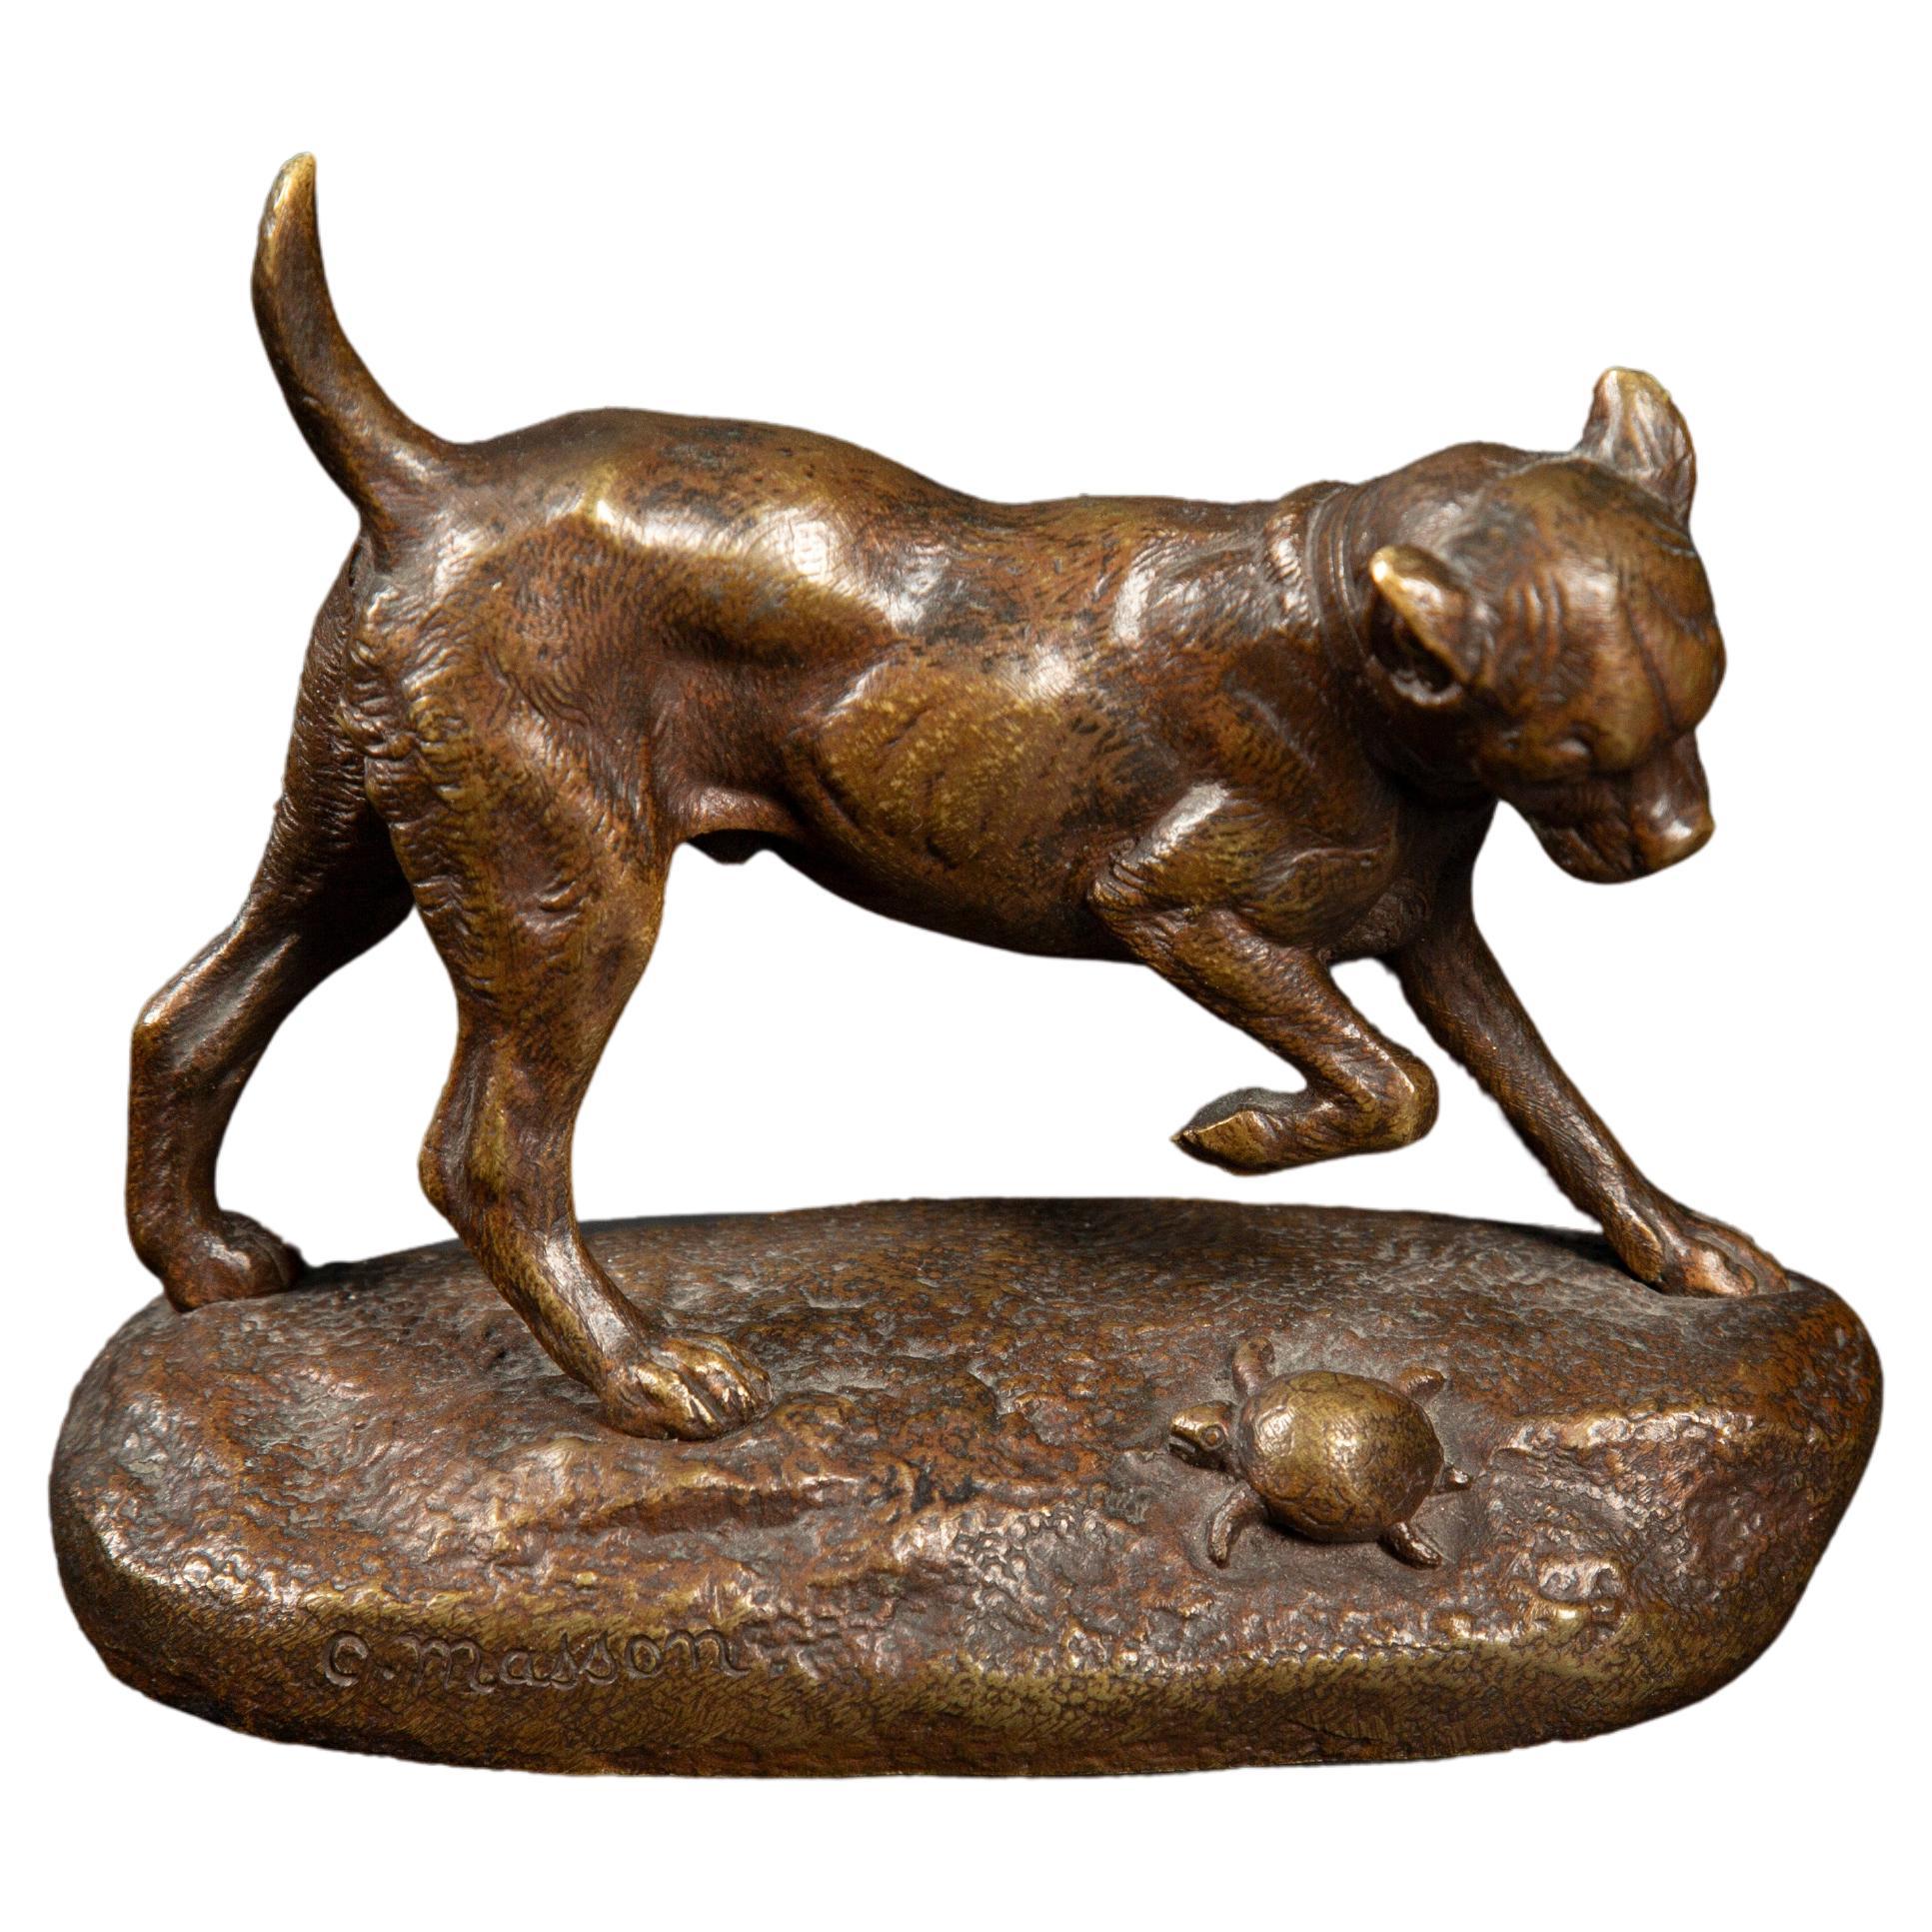 Bronzeskulptur aus dem späten 19. Jahrhundert: Hunde- und Schildkrötenspiel von Clovis Edmond Masson